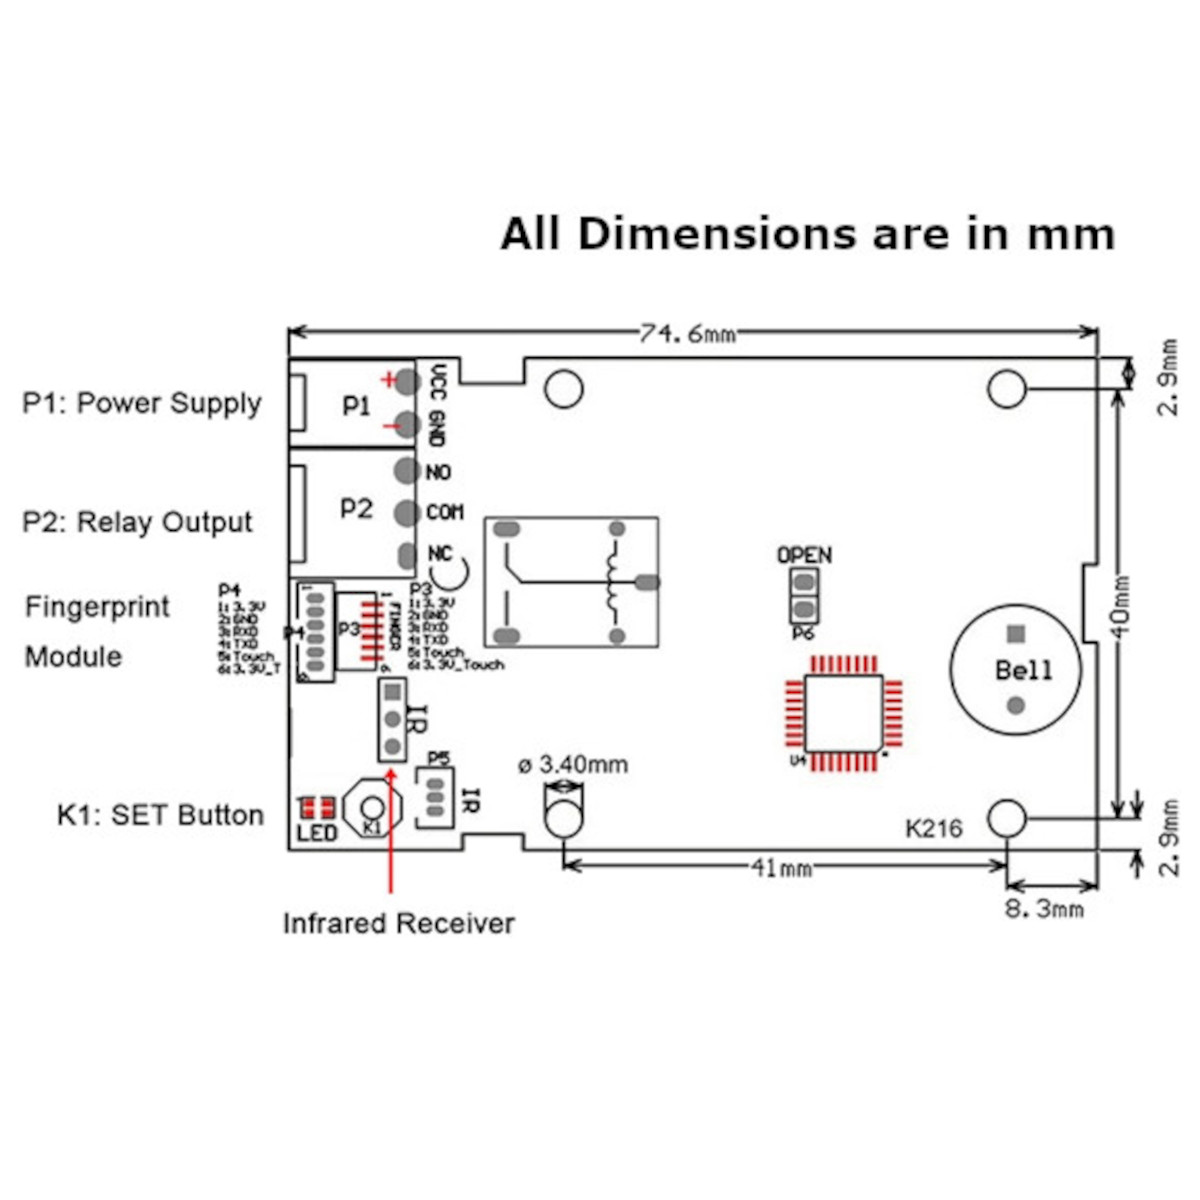 Dimensions and Circuit Diagram